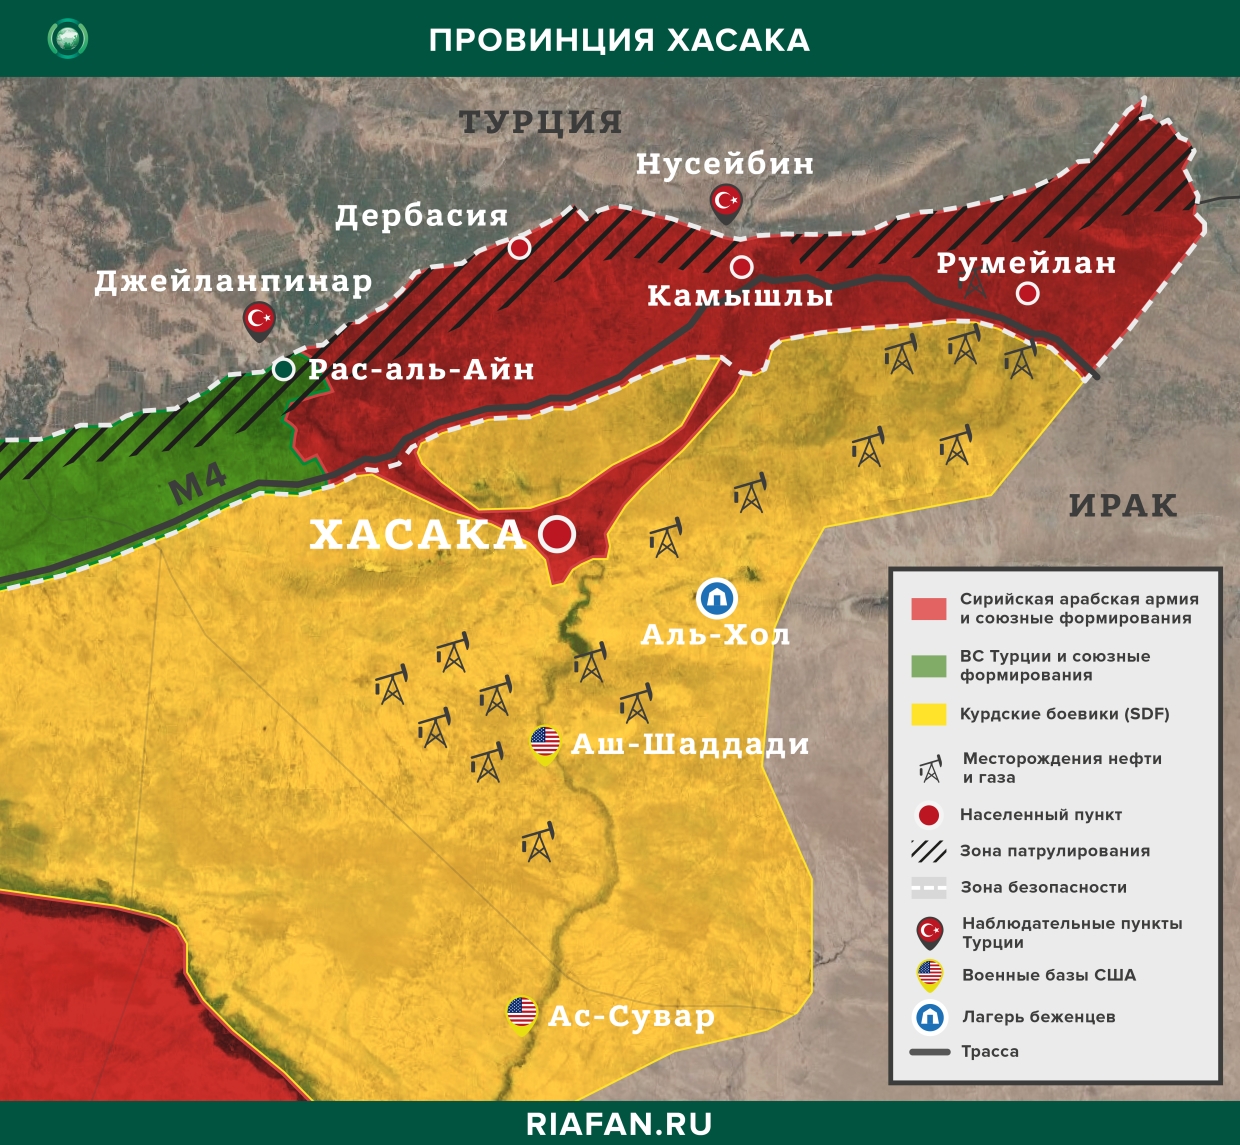 Noticias de Siria 25 Julio 22.30: междоусобица боевиков в Идлибе, войска коалиции провели учения с SDF в Хасаке